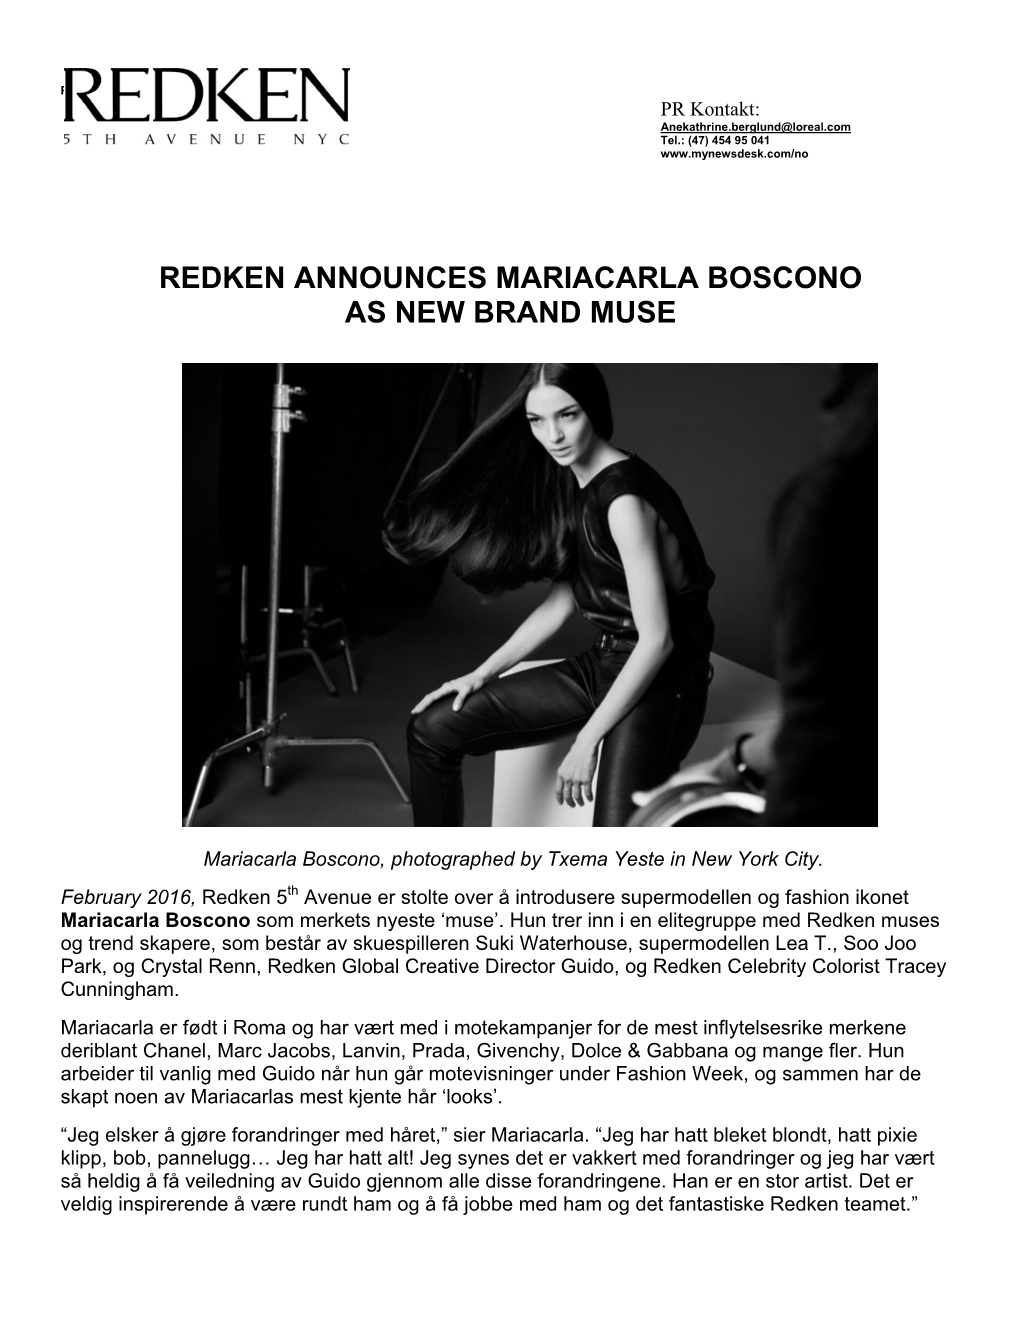 Redken Announces Mariacarla Boscono As New Brand Muse